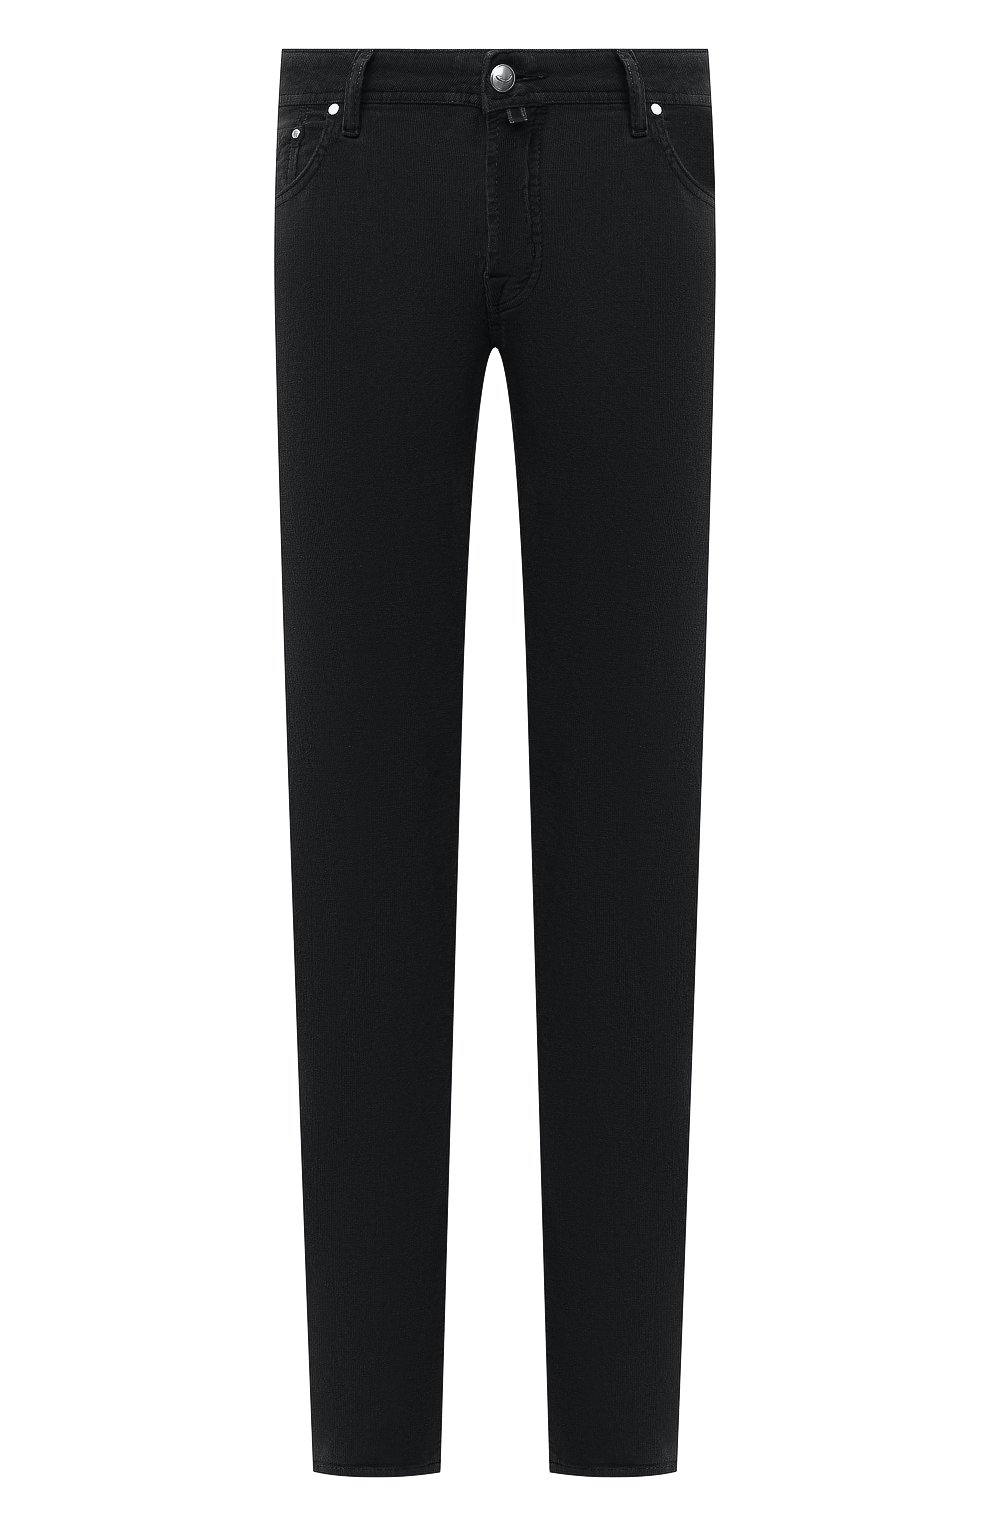 Мужские хлопковые брюки JACOB COHEN черного цвета, арт. J688 C0MF 08805-V/54 | Фото 1 (Длина (брюки, джинсы): Стандартные; Случай: Повседневный; Материал внешний: Хлопок; Стили: Кэжуэл)